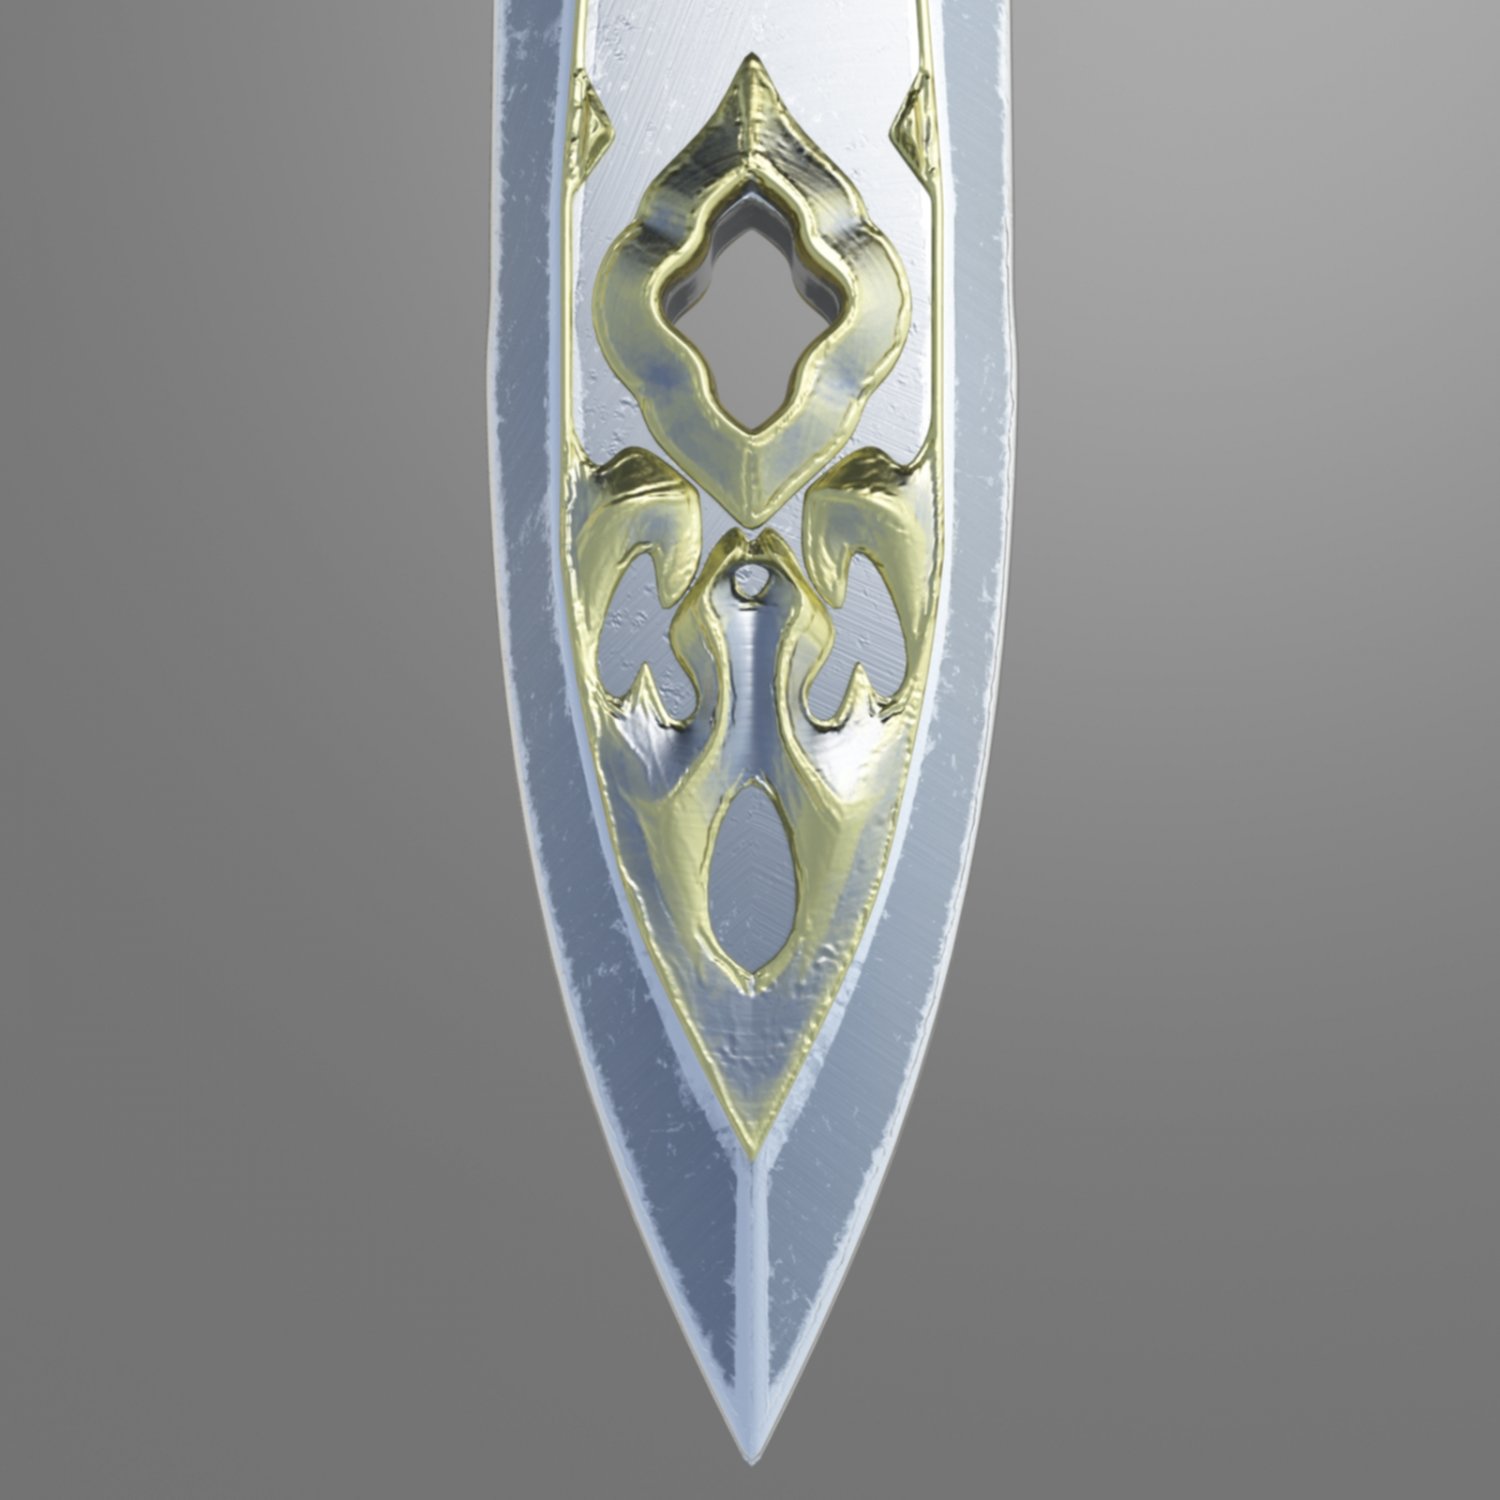 Fantasy sword